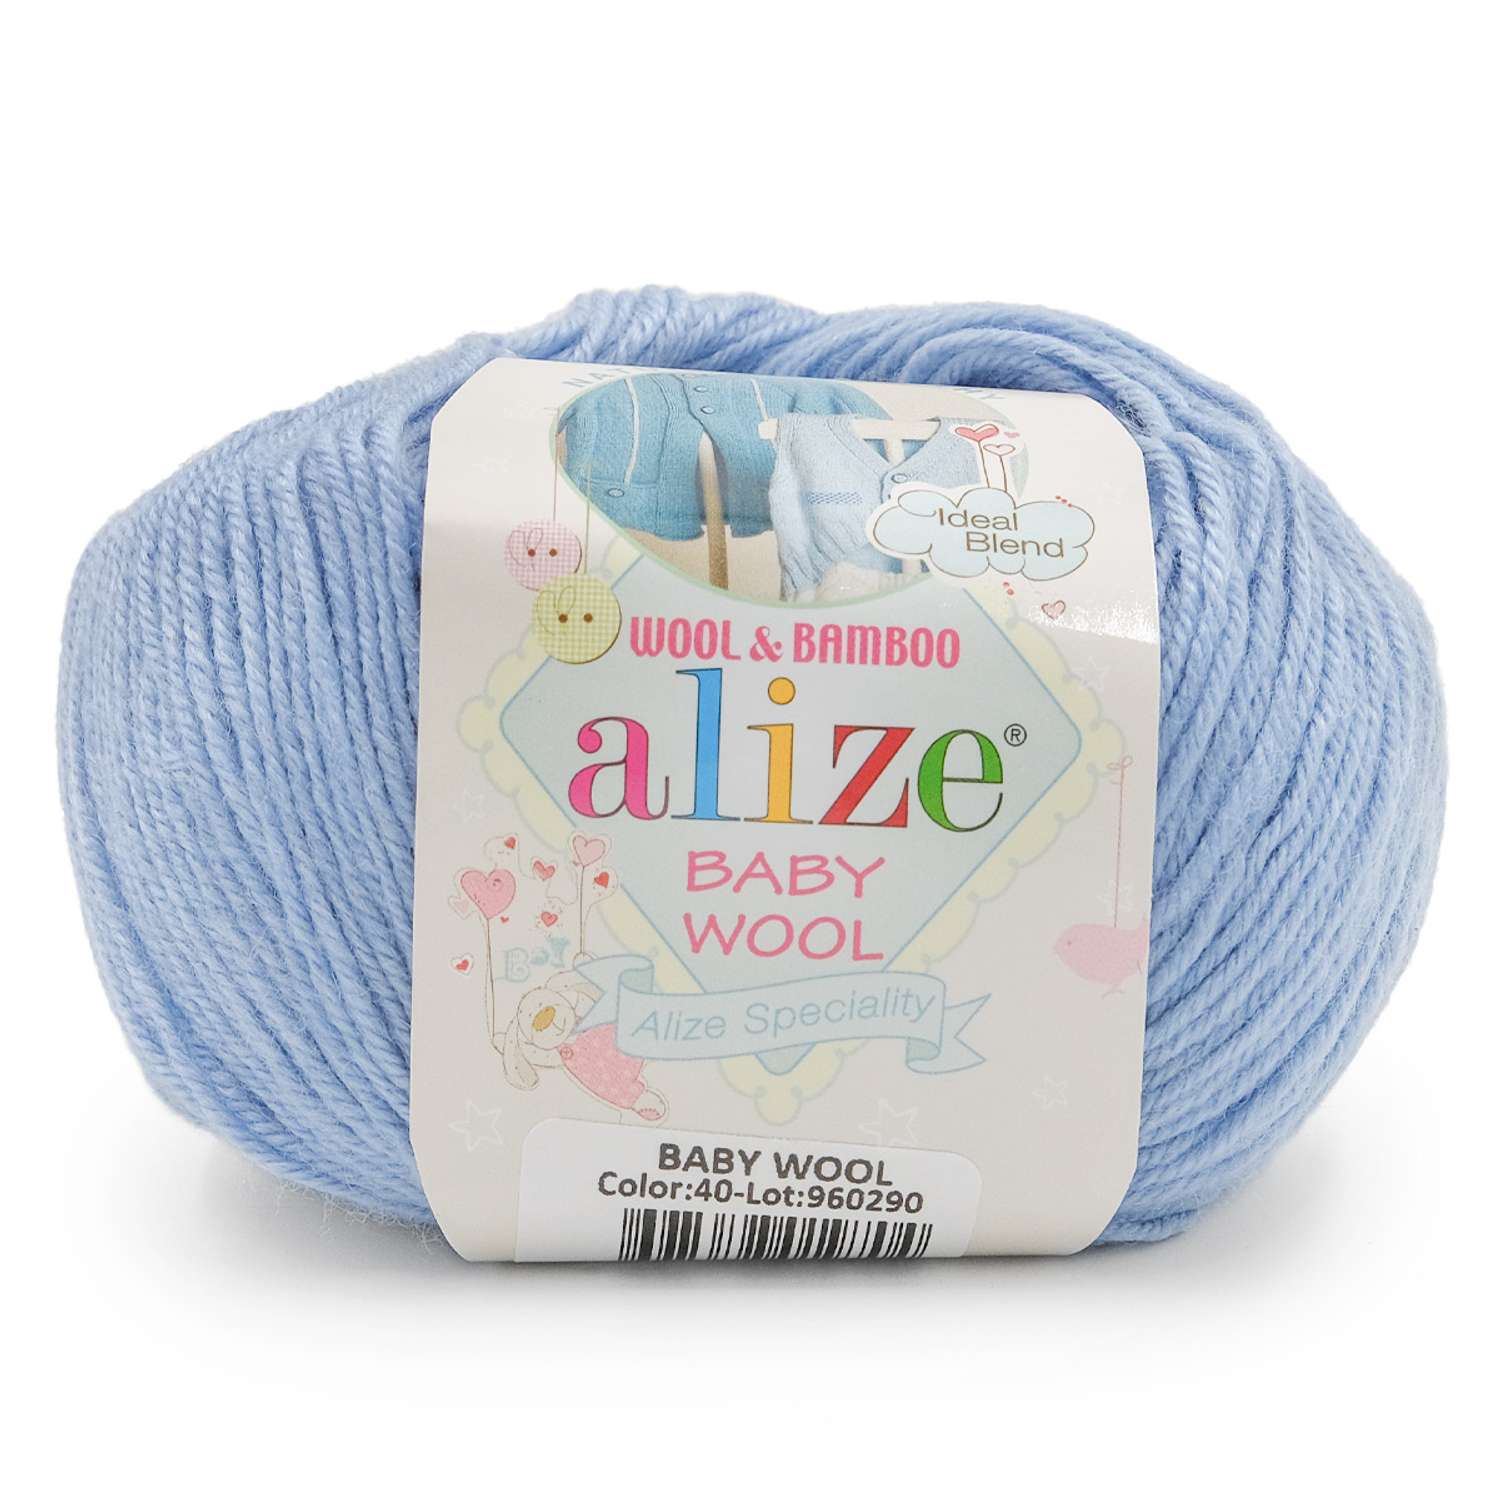 Пряжа для вязания Alize baby wool бамбук шерсть акрил мягкая 50 гр 175 м 40 голубой 10 мотков - фото 1